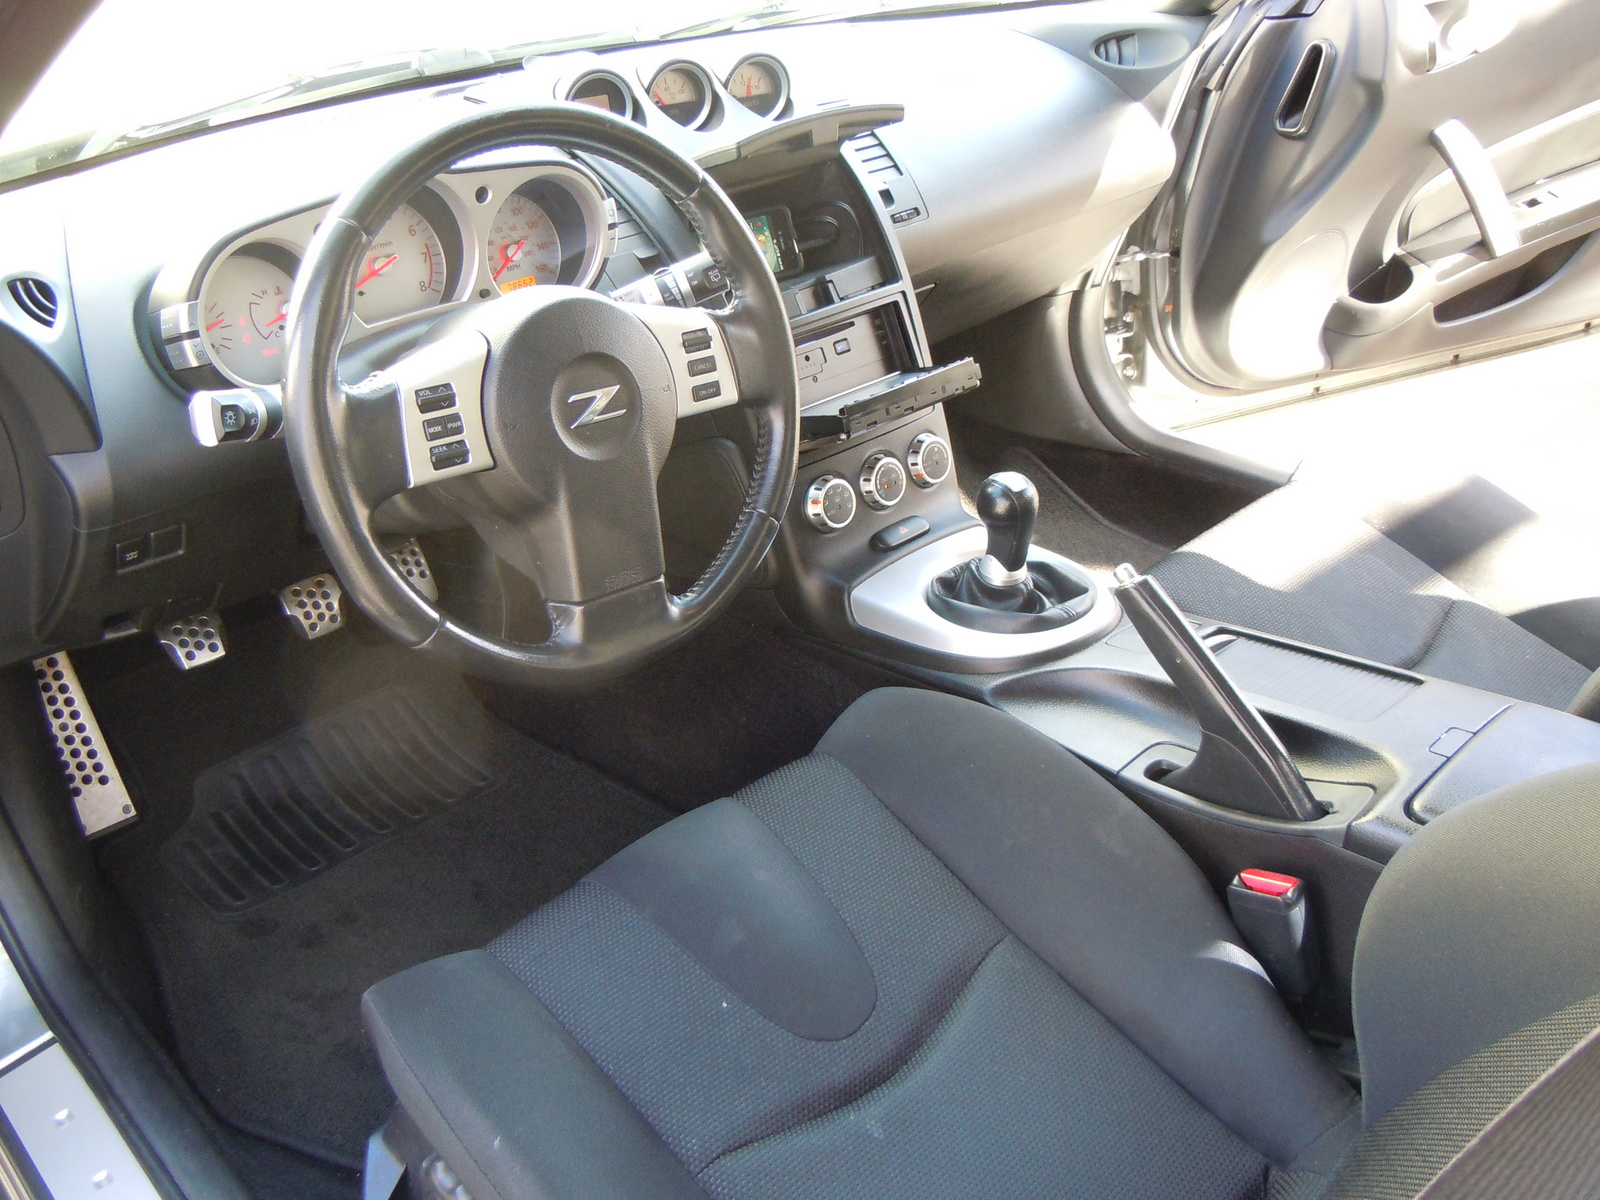 2006 Nissan 350z interior photos #2